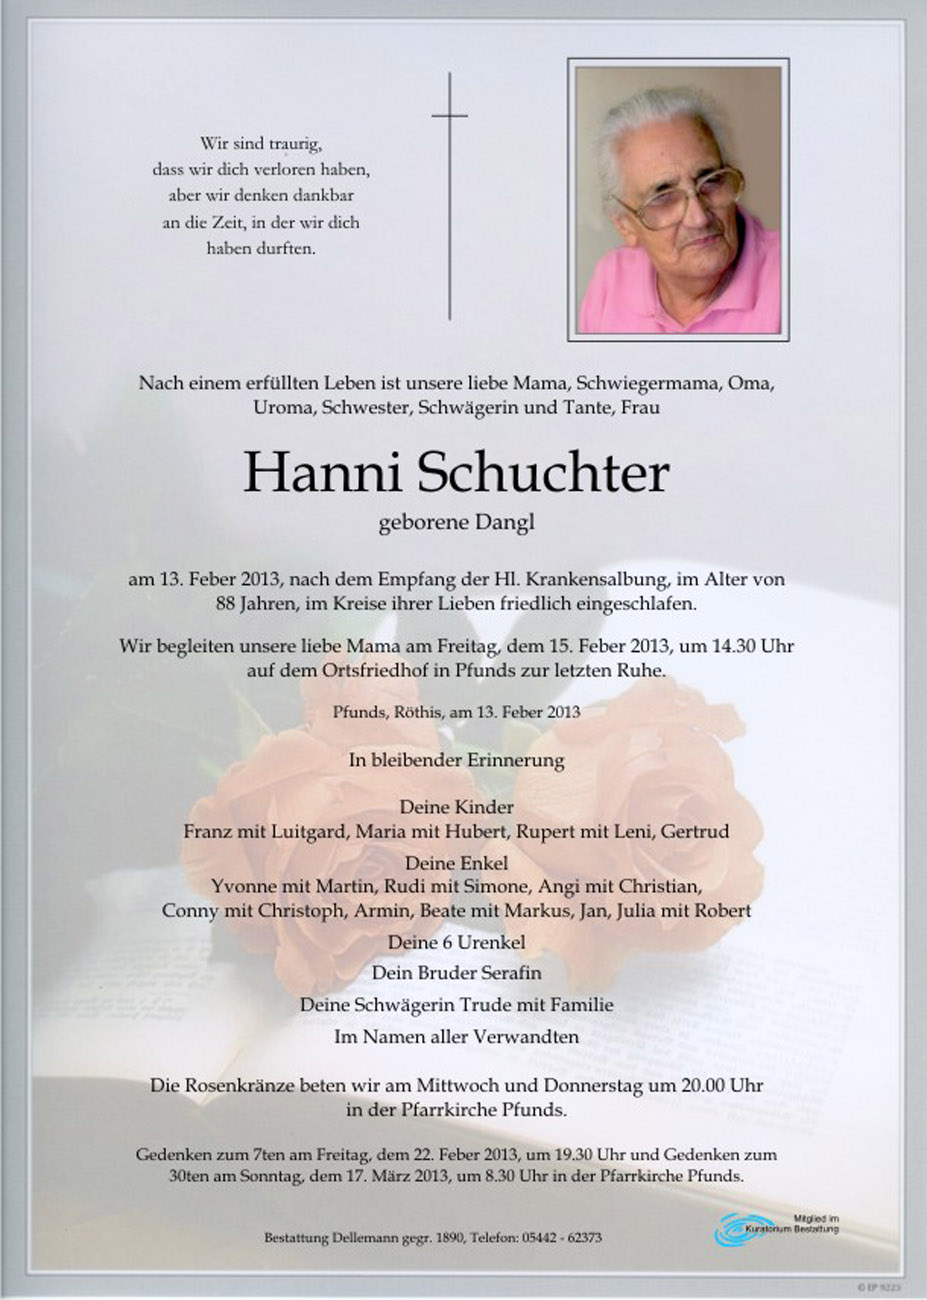   Hanni Schuchter